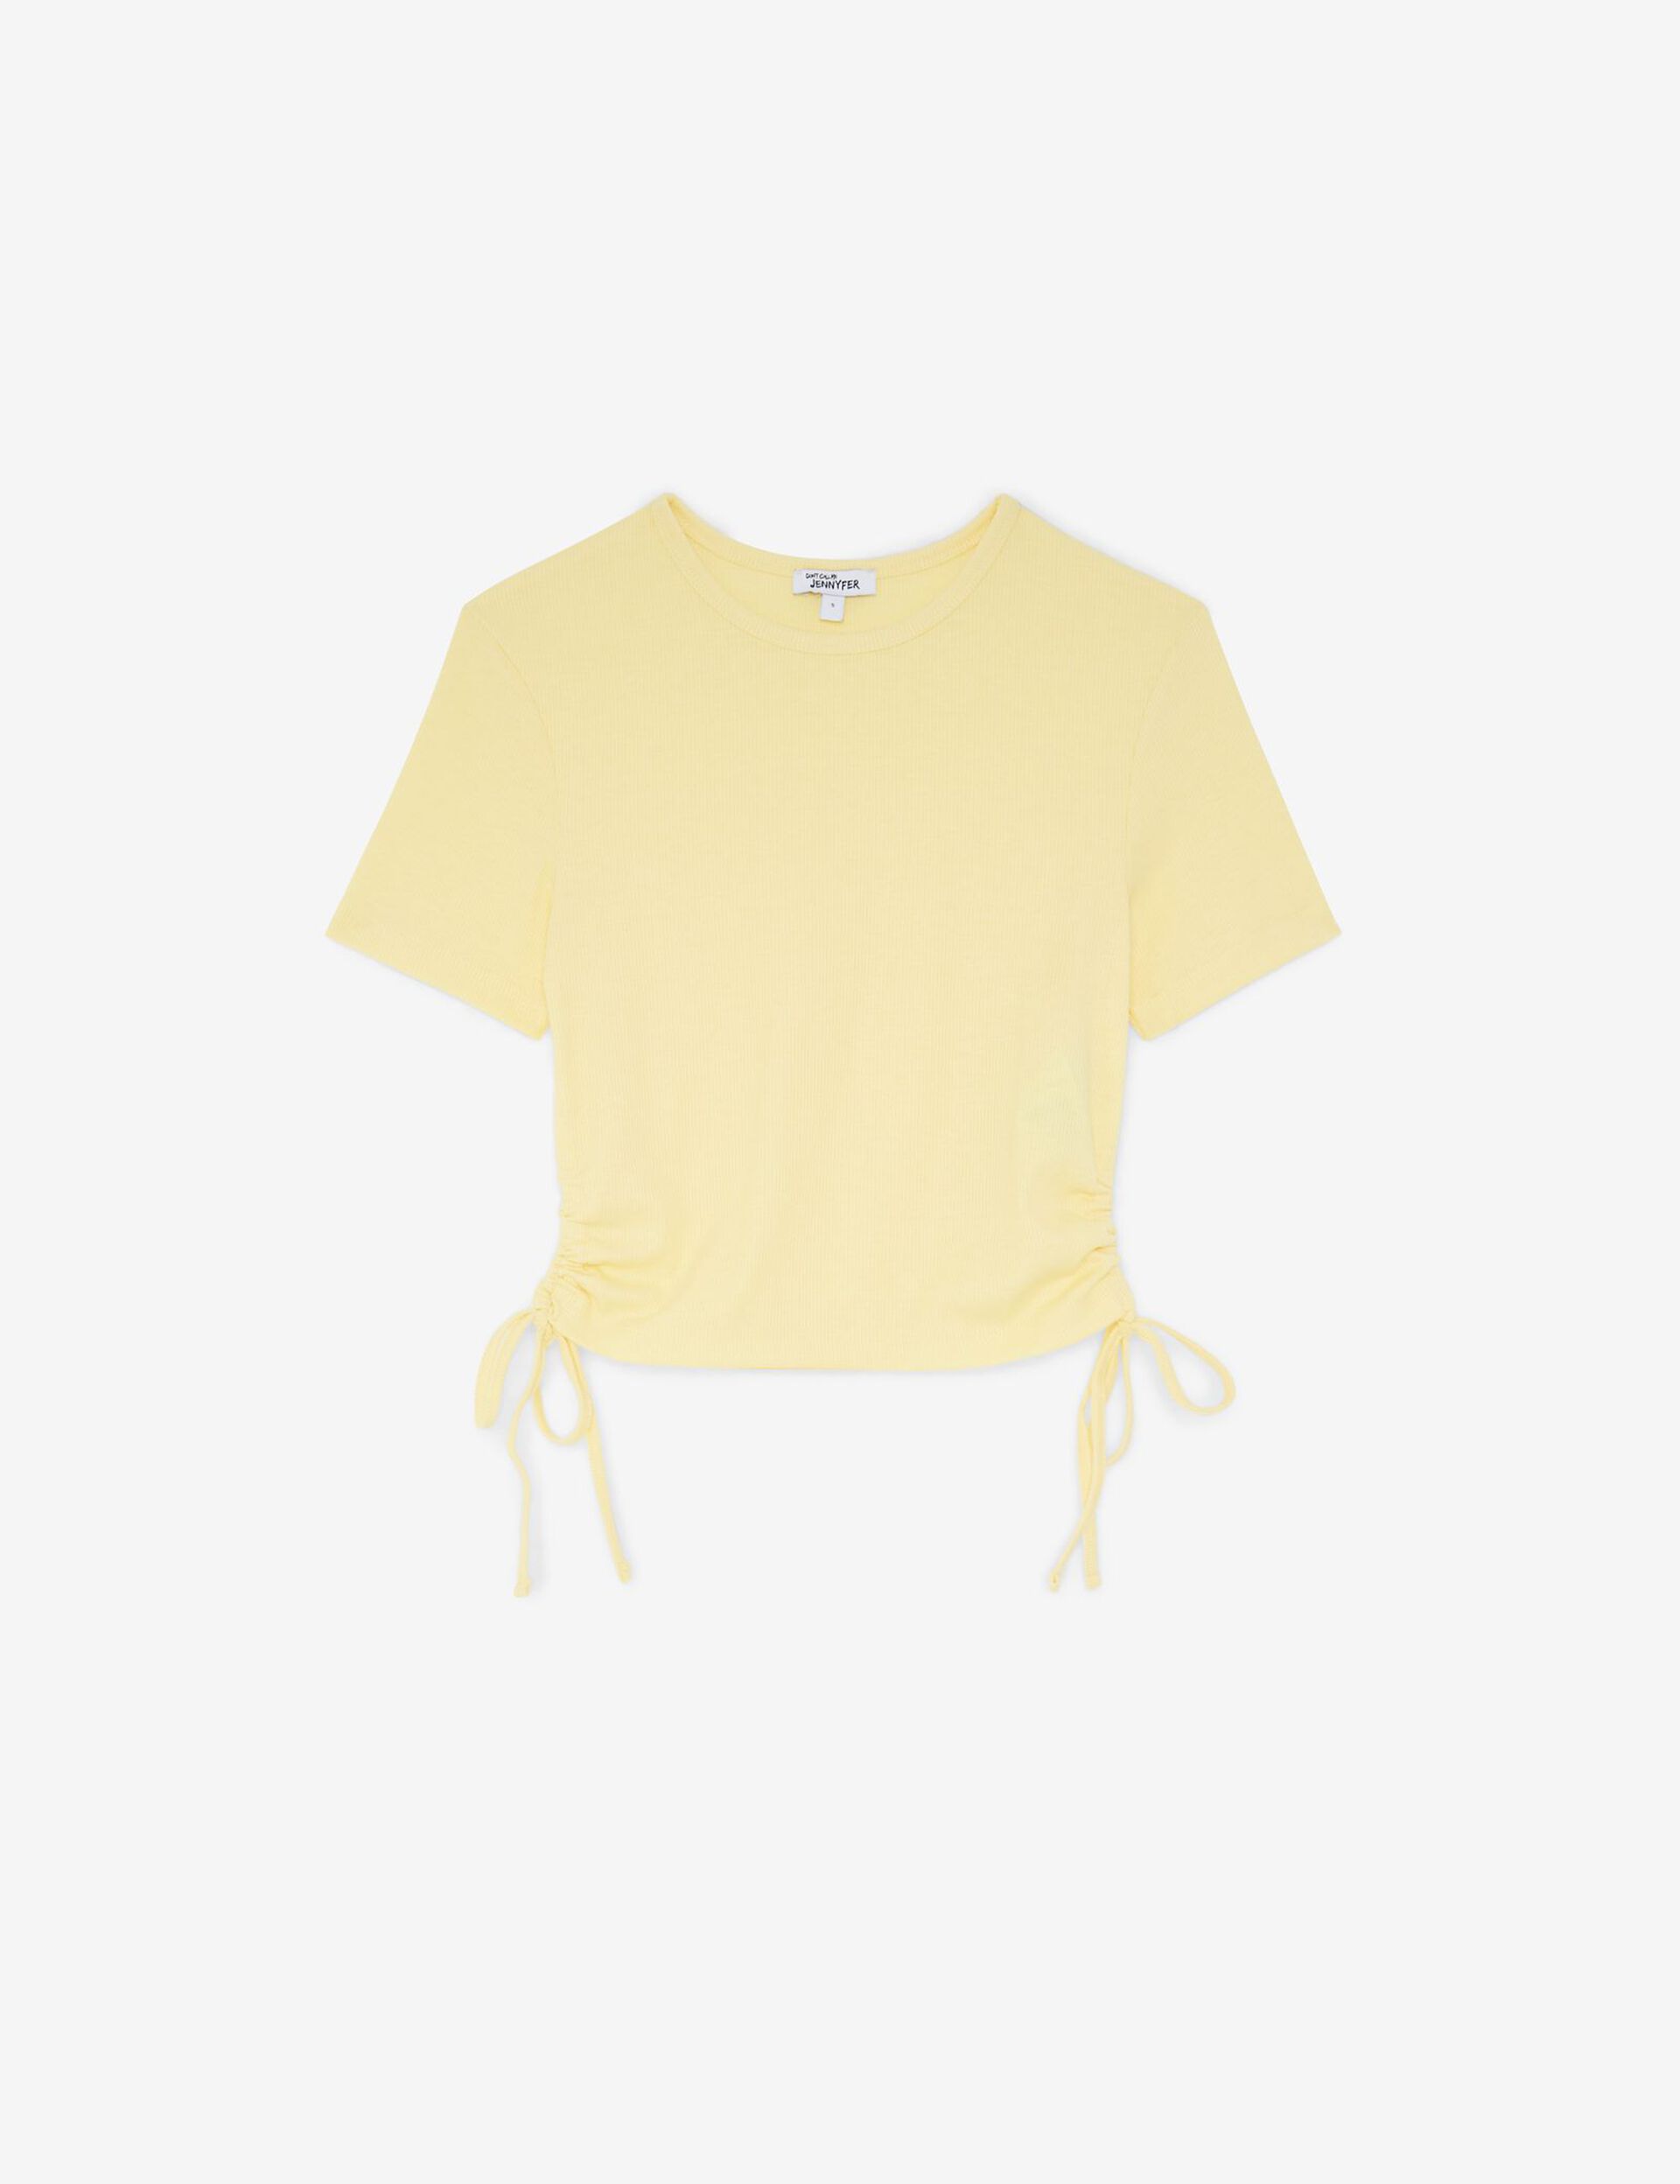 Tee-shirt jaune côtelé avec liens à nouer